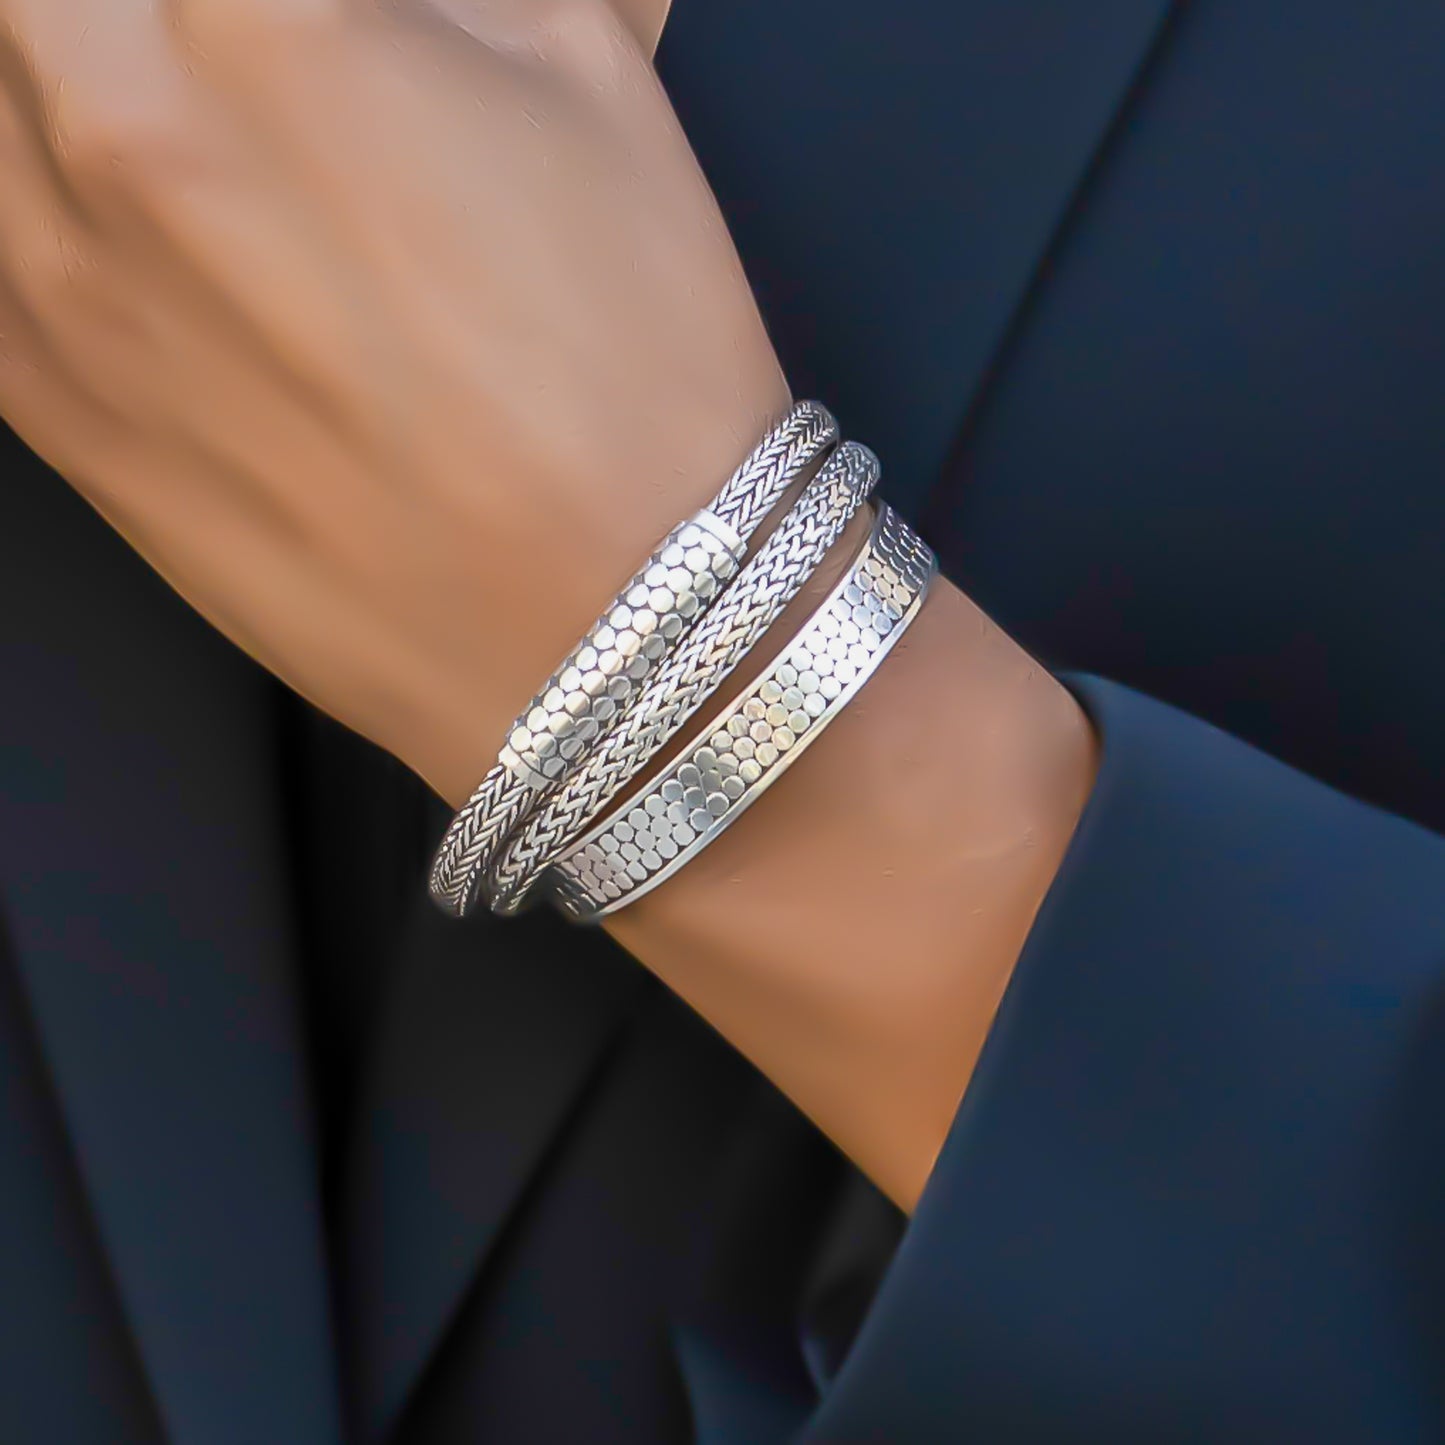 Woman wearing three silver bracelets.